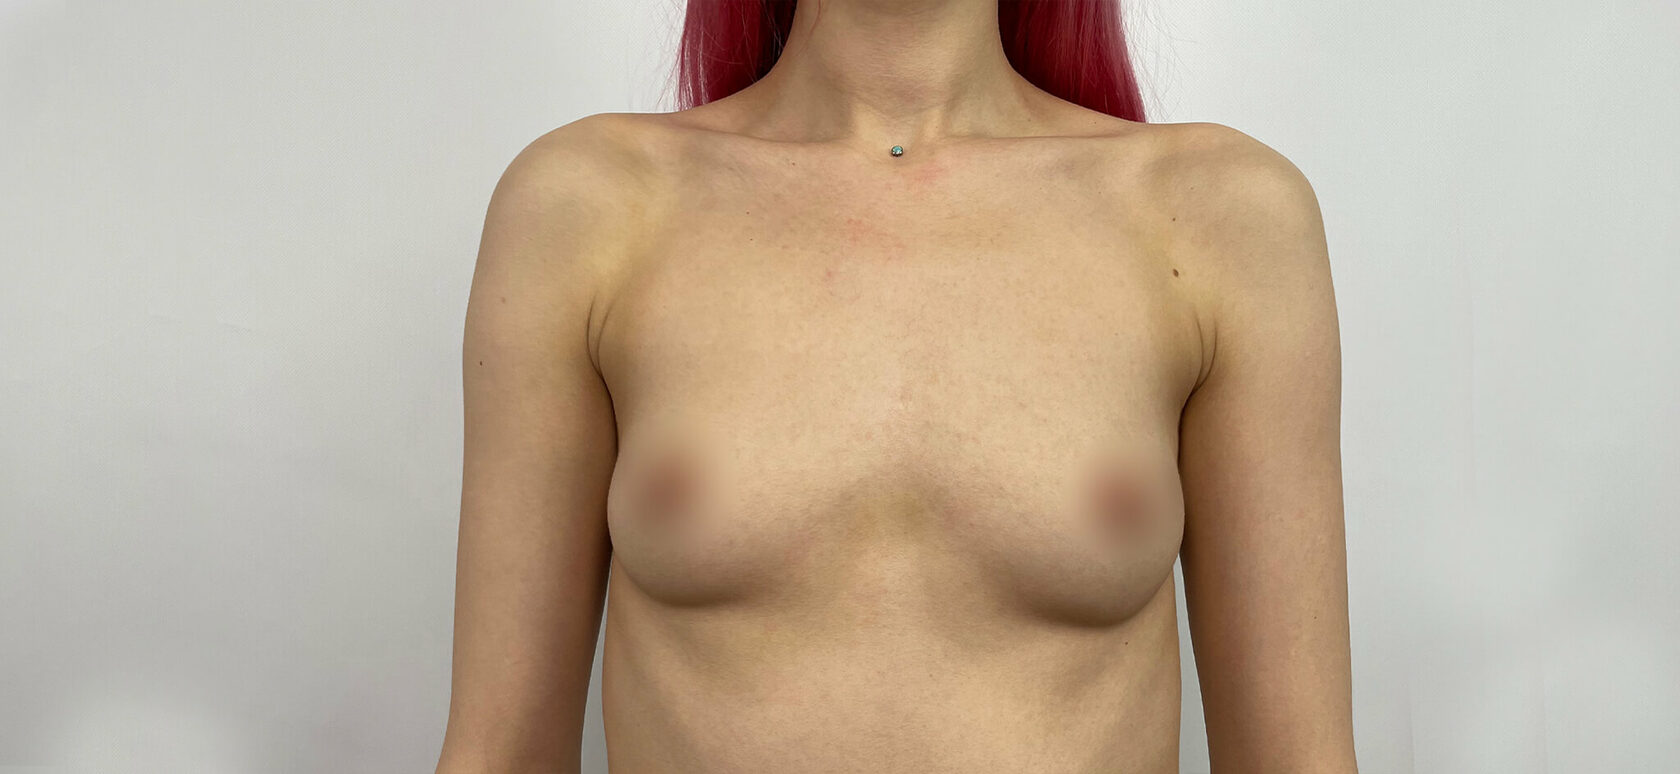 может ли при мастопатии увеличиться только одна грудь фото 91